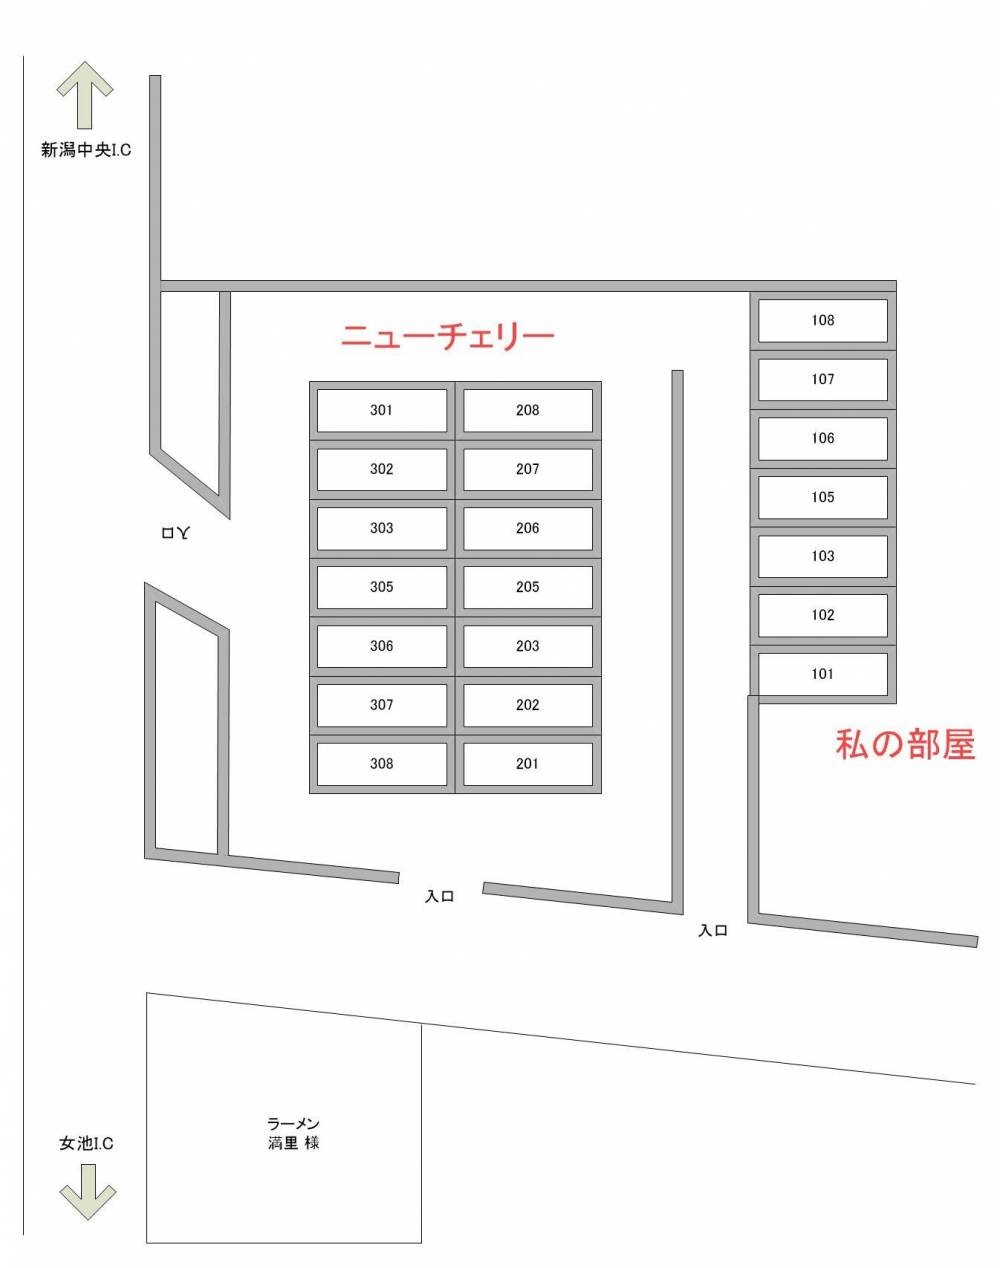 私の部屋(ワタシノヘヤ)の見取り図